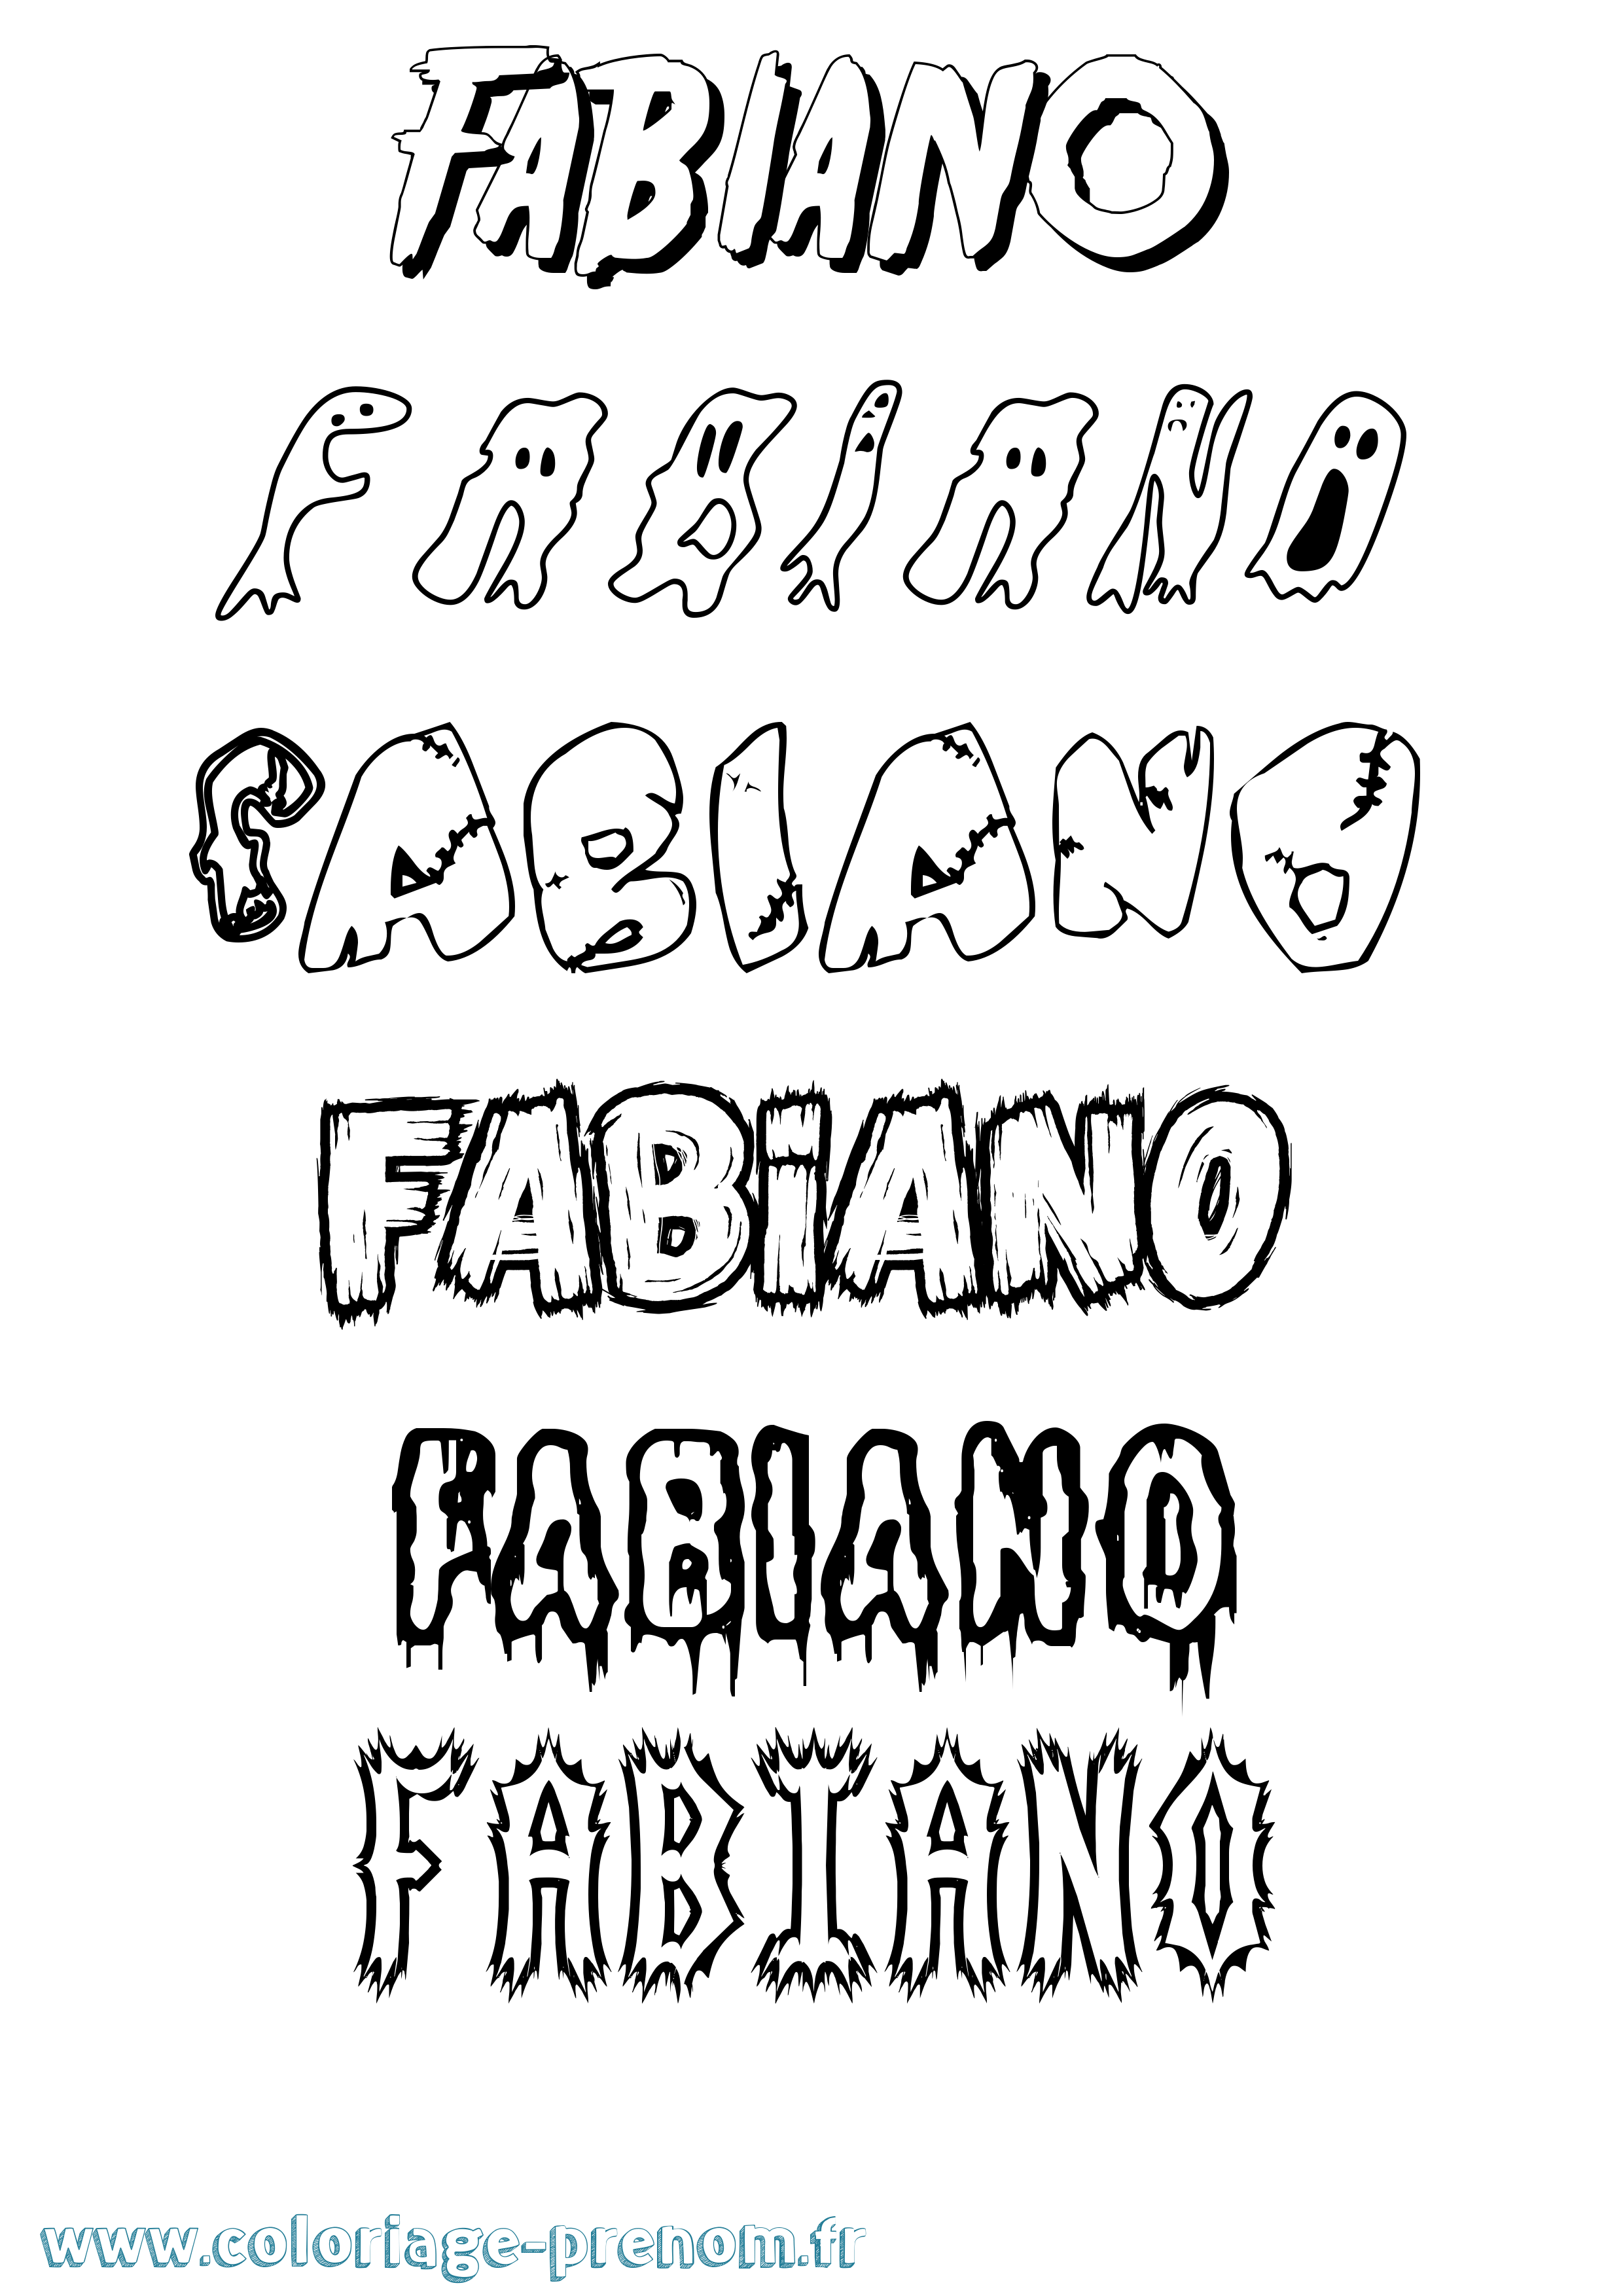 Coloriage prénom Fabiano Frisson